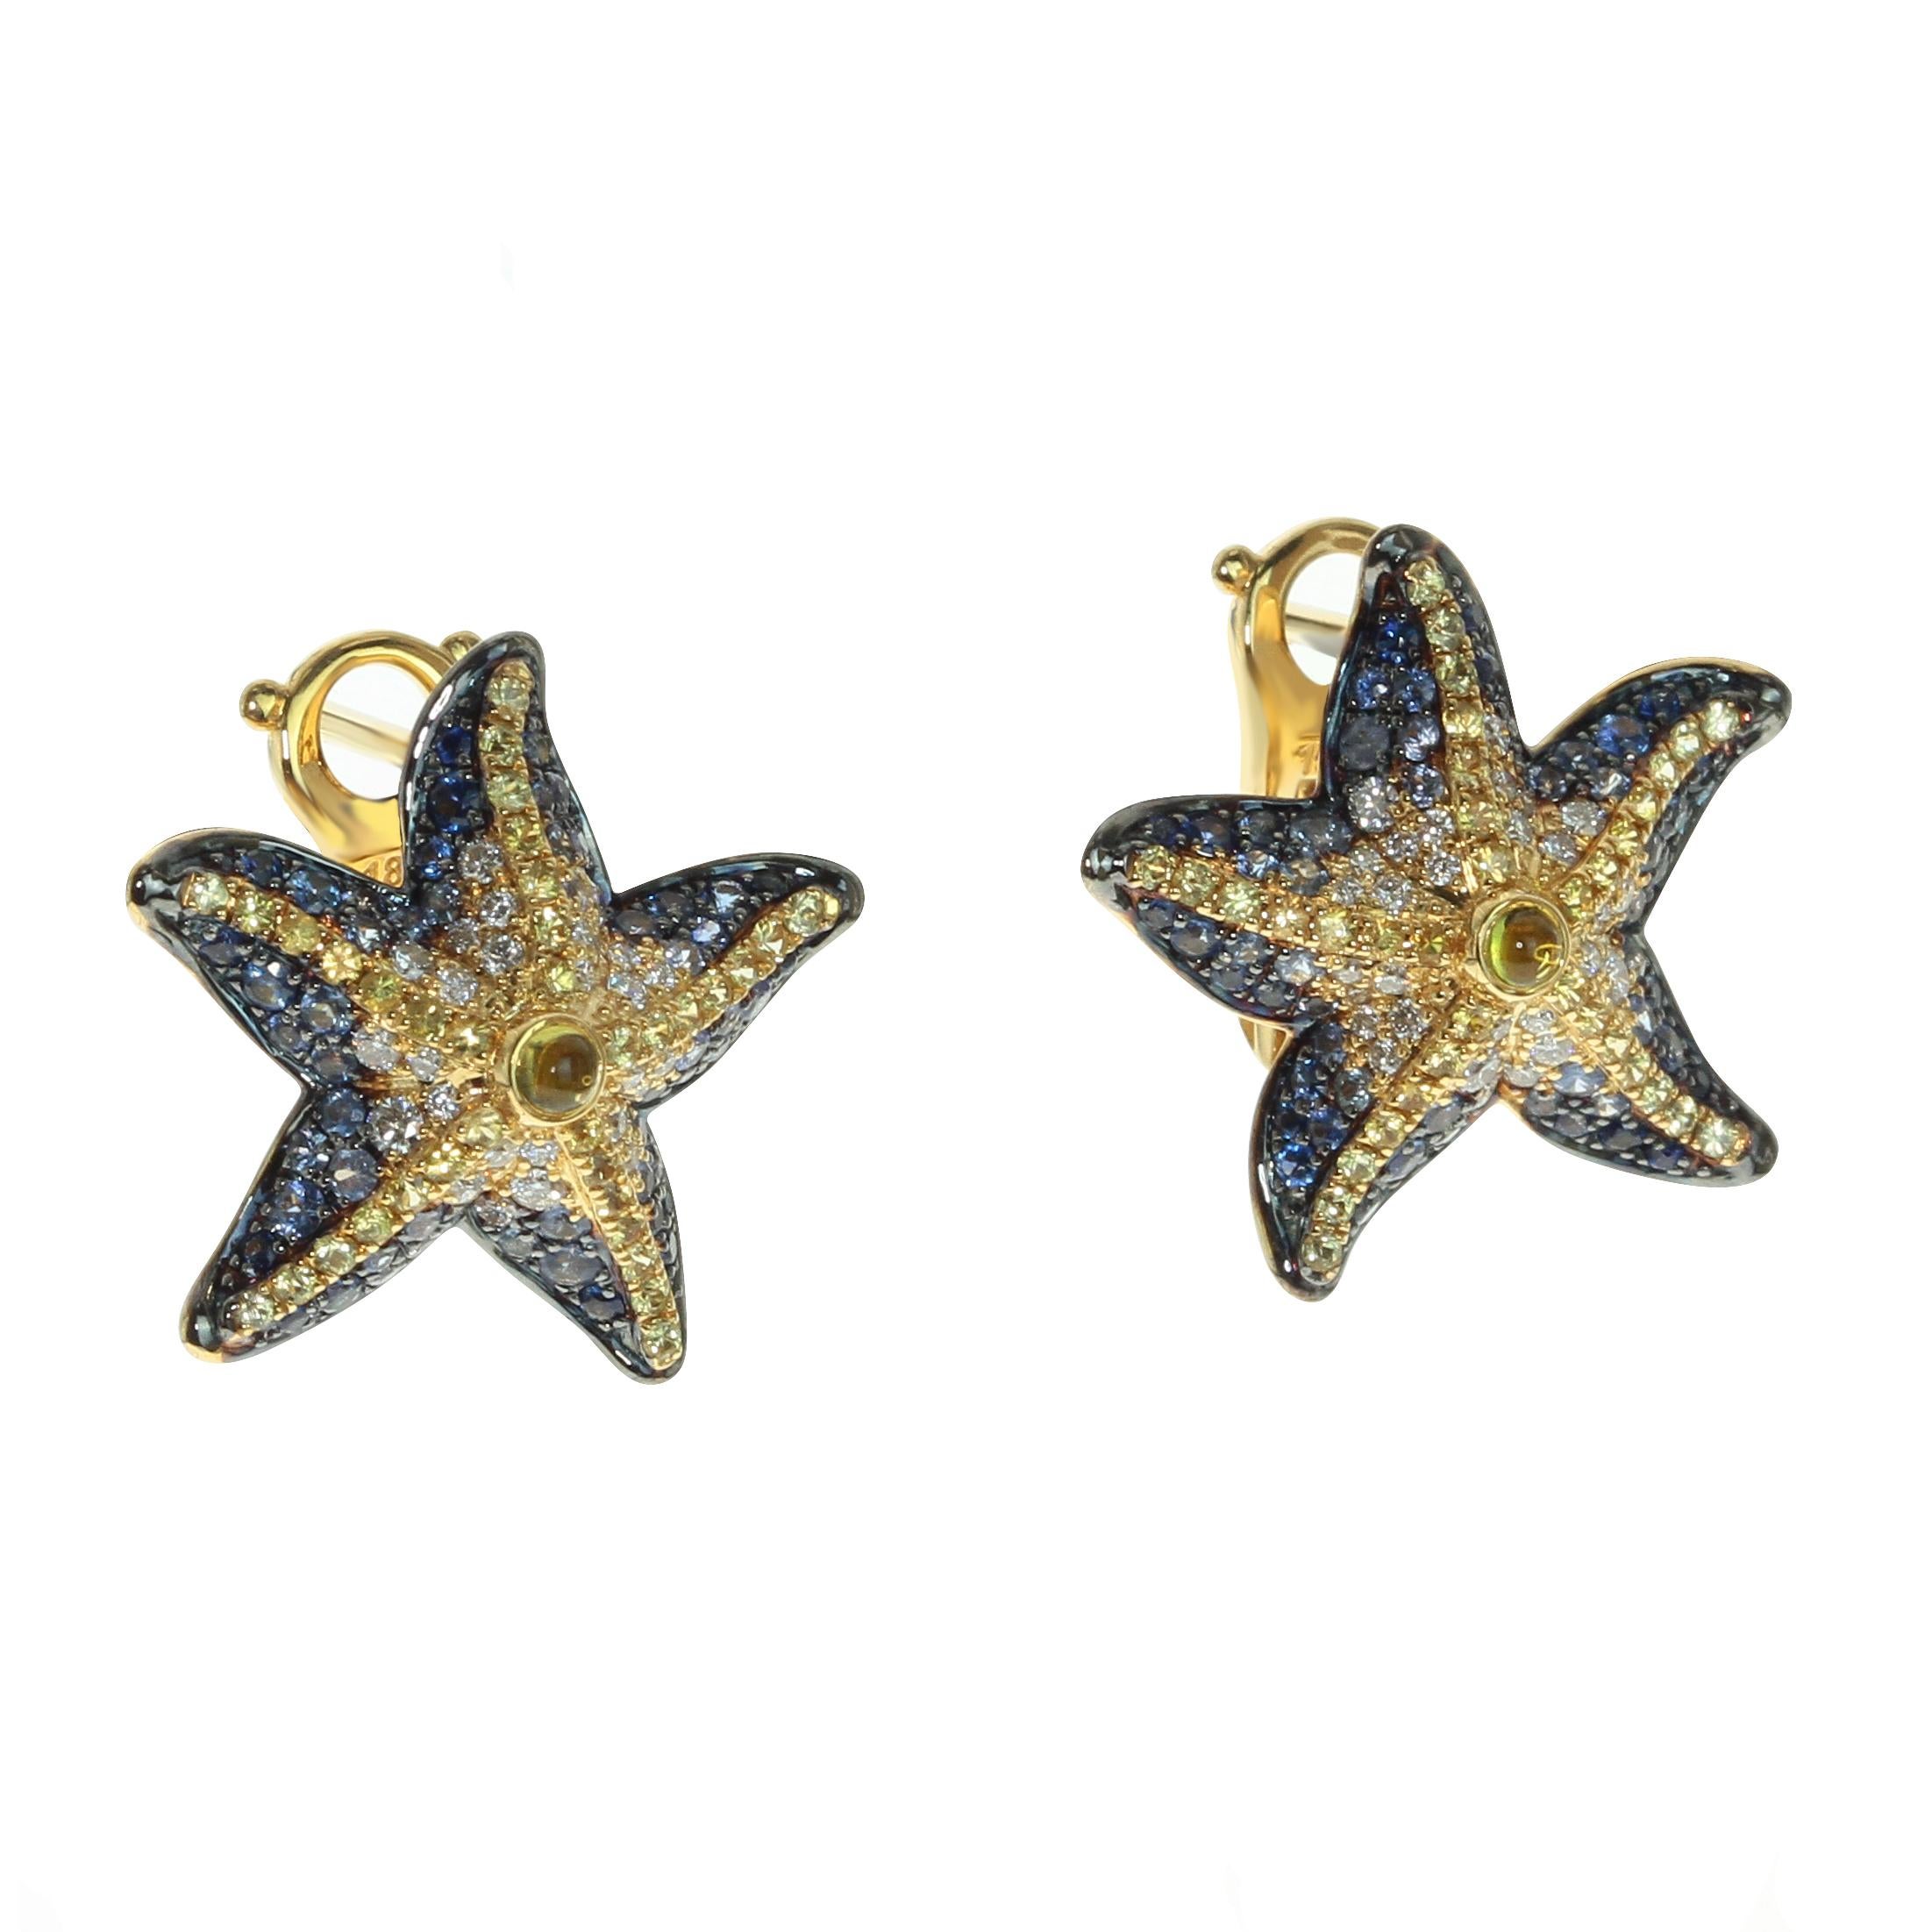 Diamanten Saphir 18 Karat Gelbgold Seestern-Ohrringe

Träumen Sie von einem sonnigen Urlaub am Meer? Mit diesen Sea Star Earrings sind die Farben des Riffs immer dabei. Überprüfen Sie die Abstufung der Farben und wie die Form des Seesterns auf das